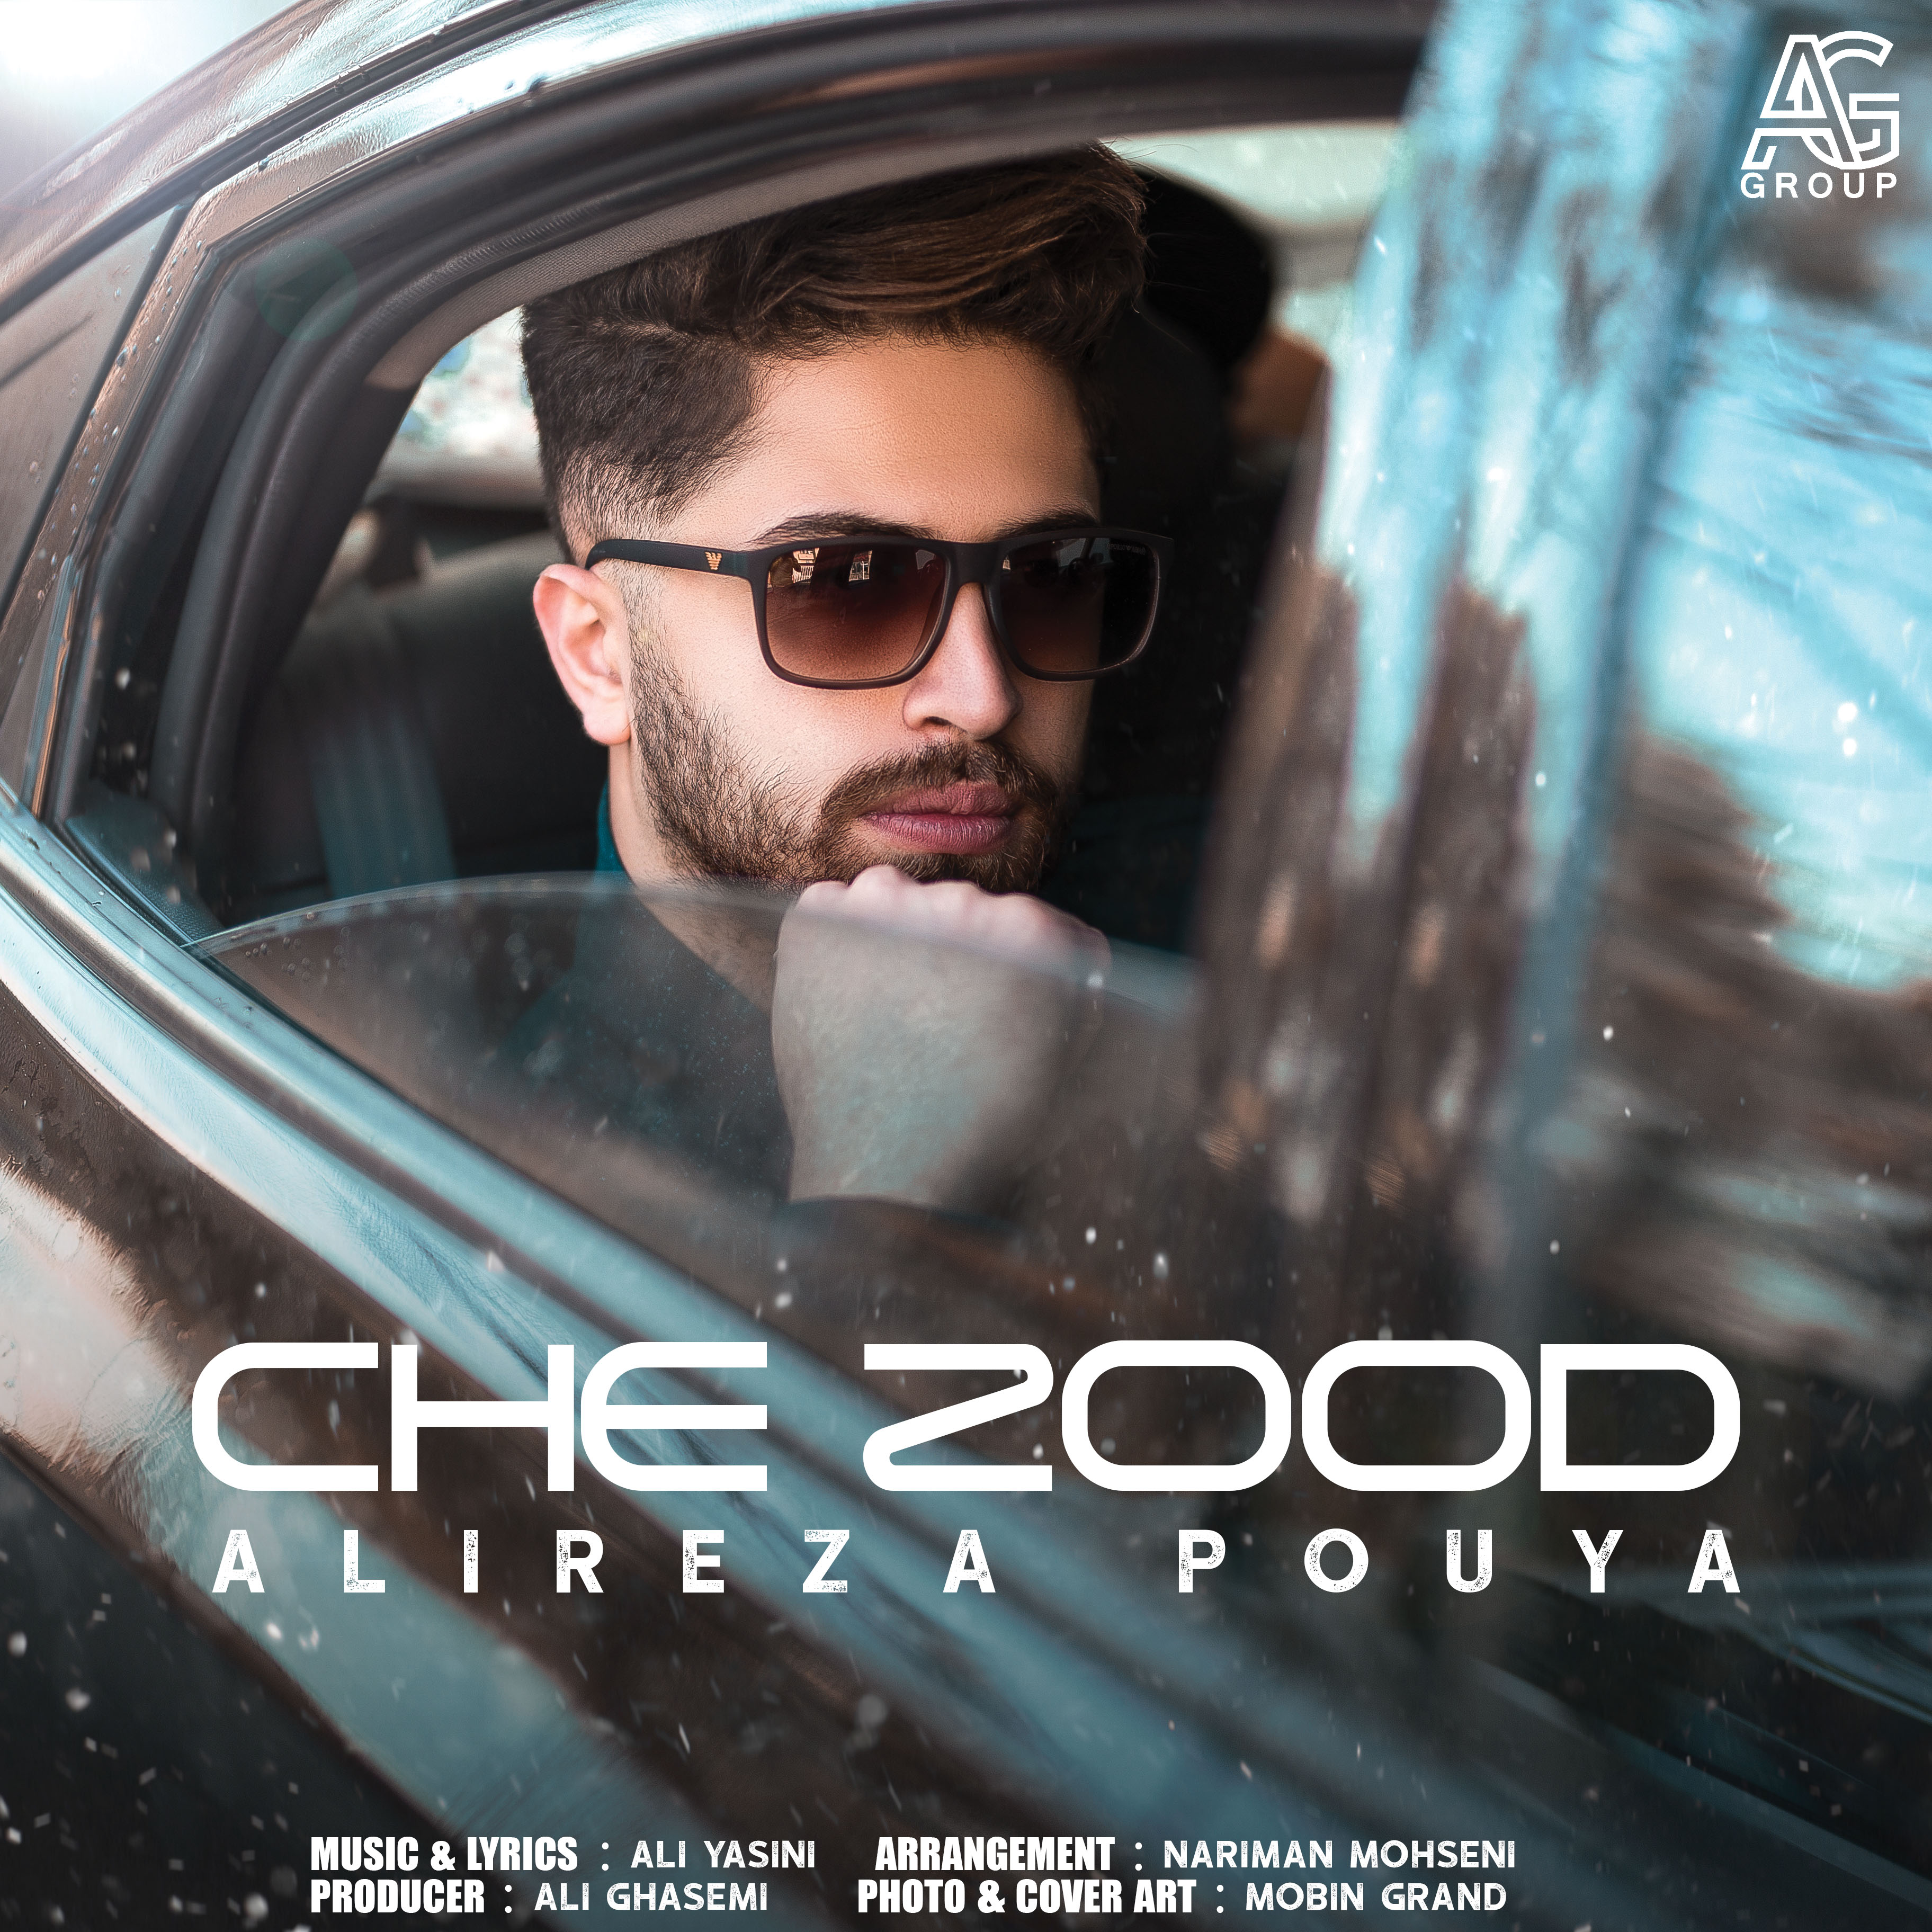  دانلود آهنگ جدید علیرضا پویا - چه زود | Download New Music By Alireza Pouya - Che Zood